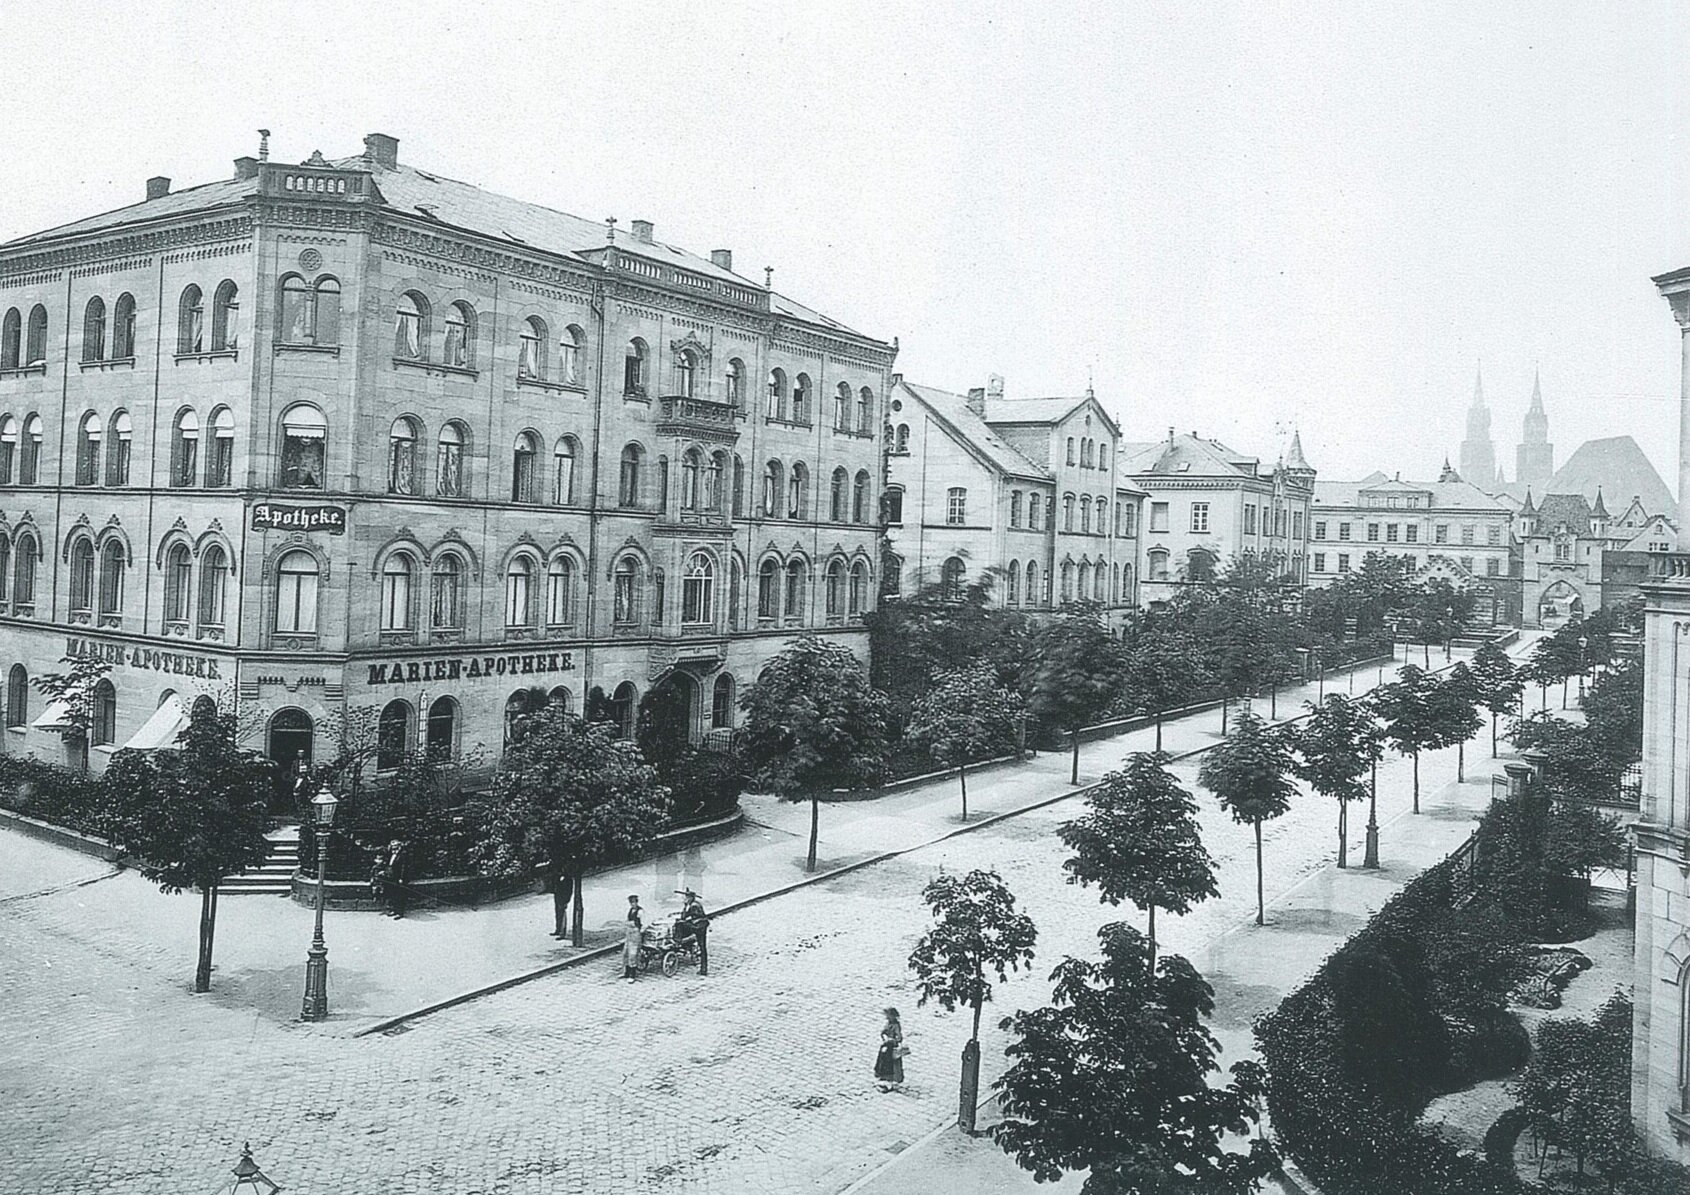 Blick in die Marienstraße in Richtung Marientor, Fotografie von Ferdinand Schmidt um 1870.